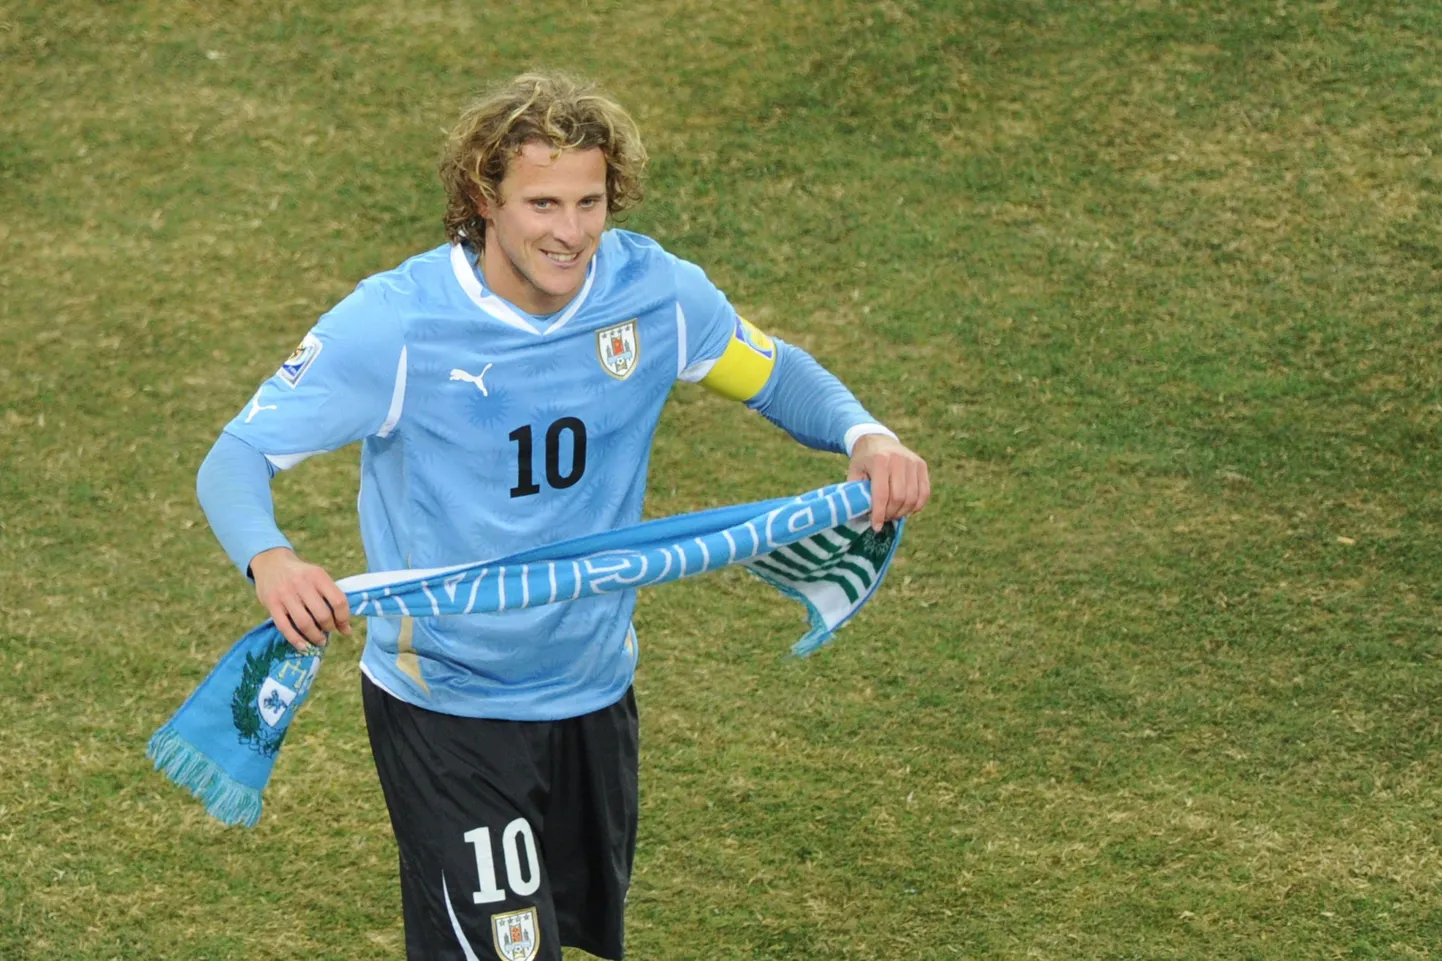 Diego Forlan suvisel MMil Uruguay koondise kaptenina.